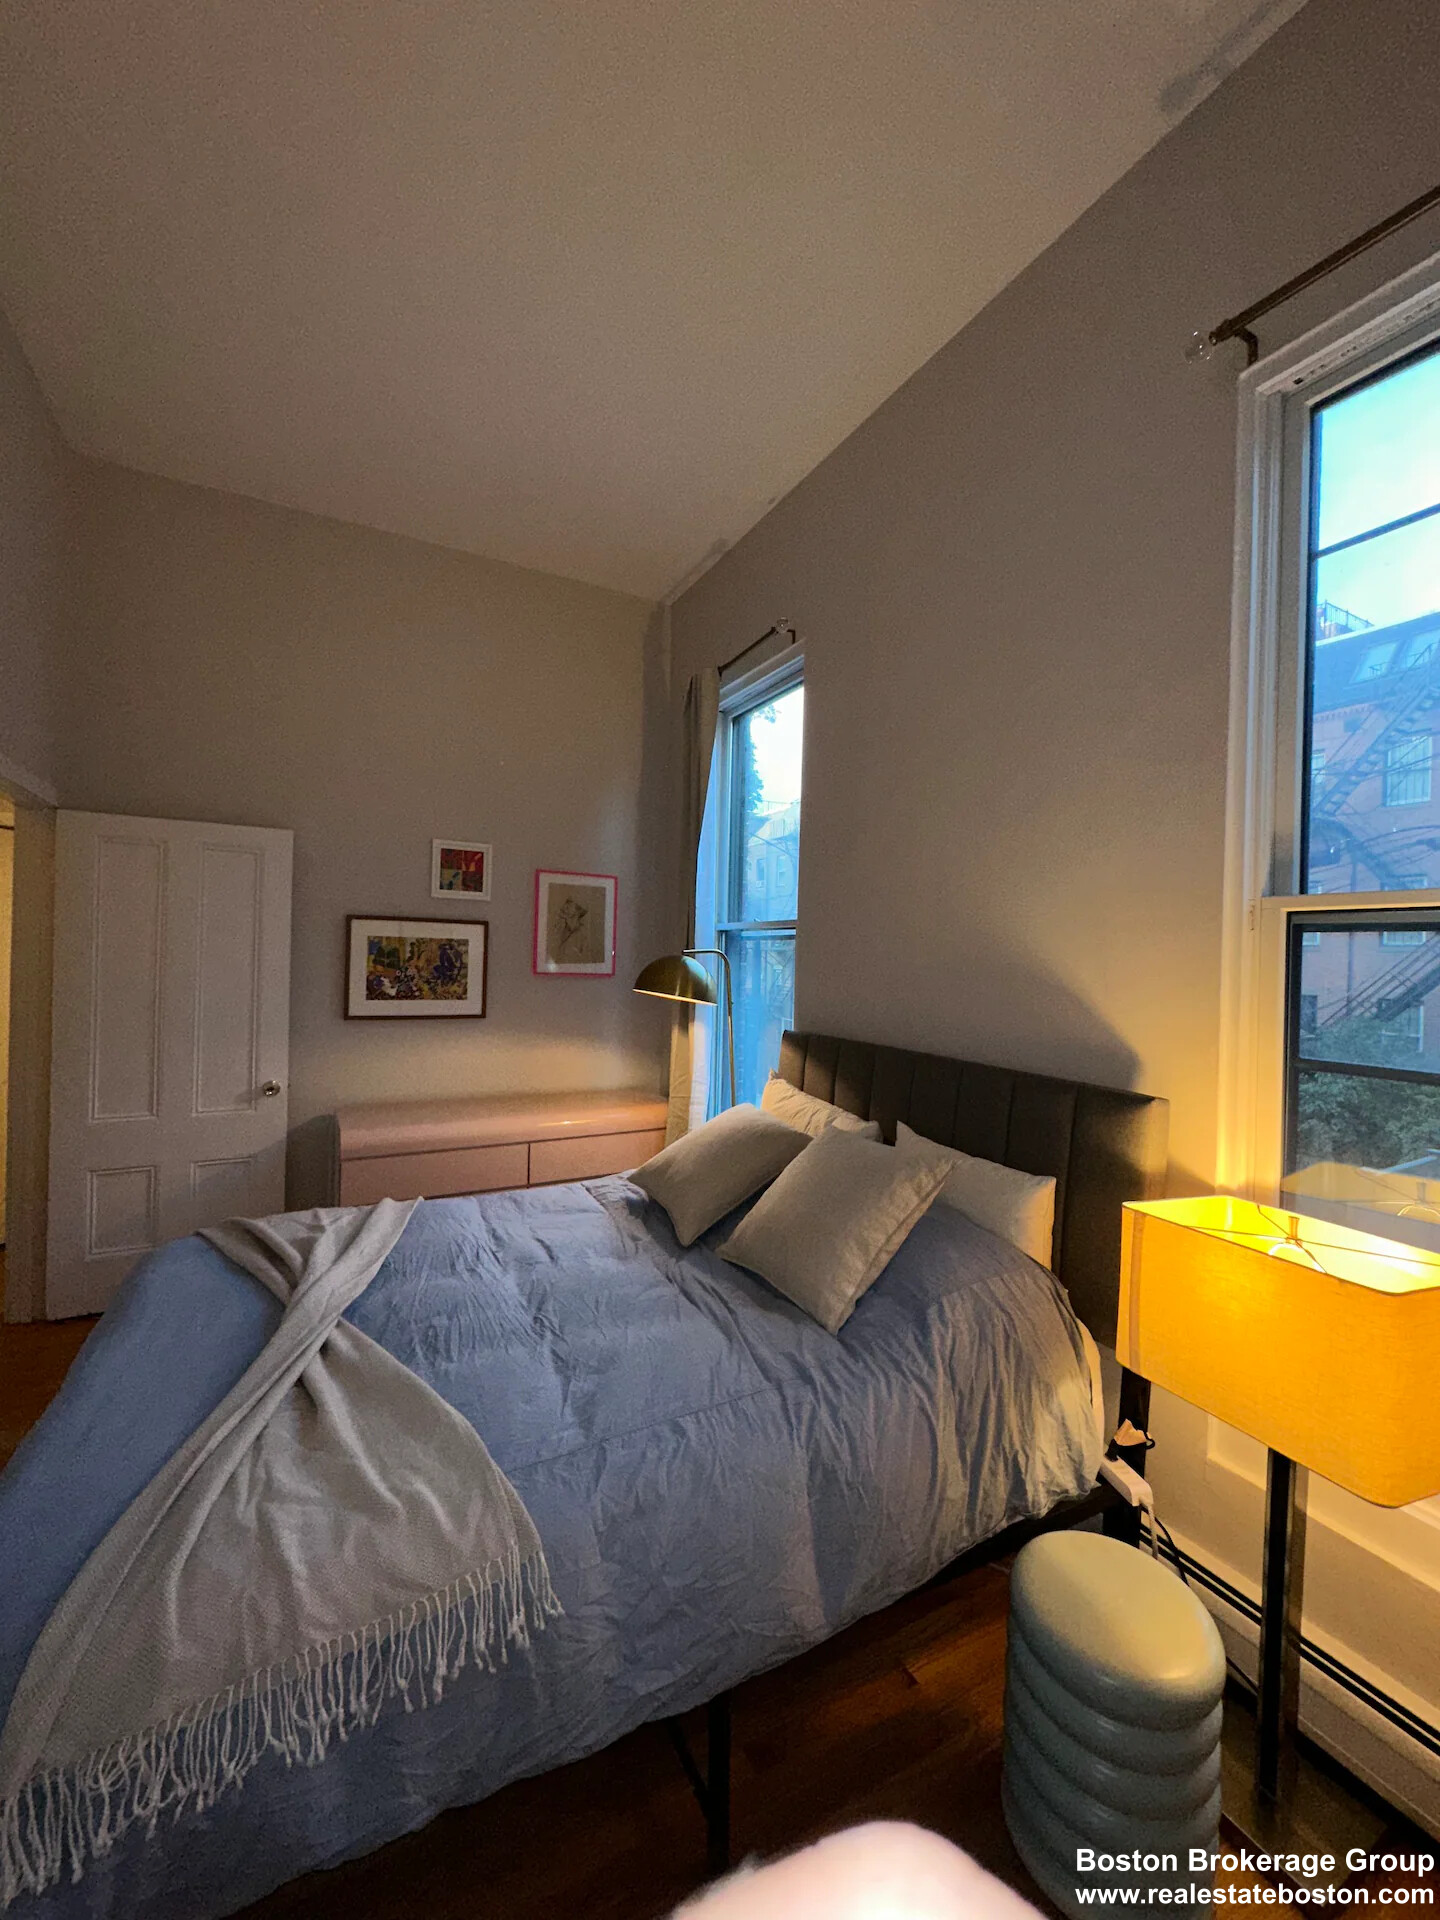 Photos of apartment on Massachusetts,Boston MA 02118